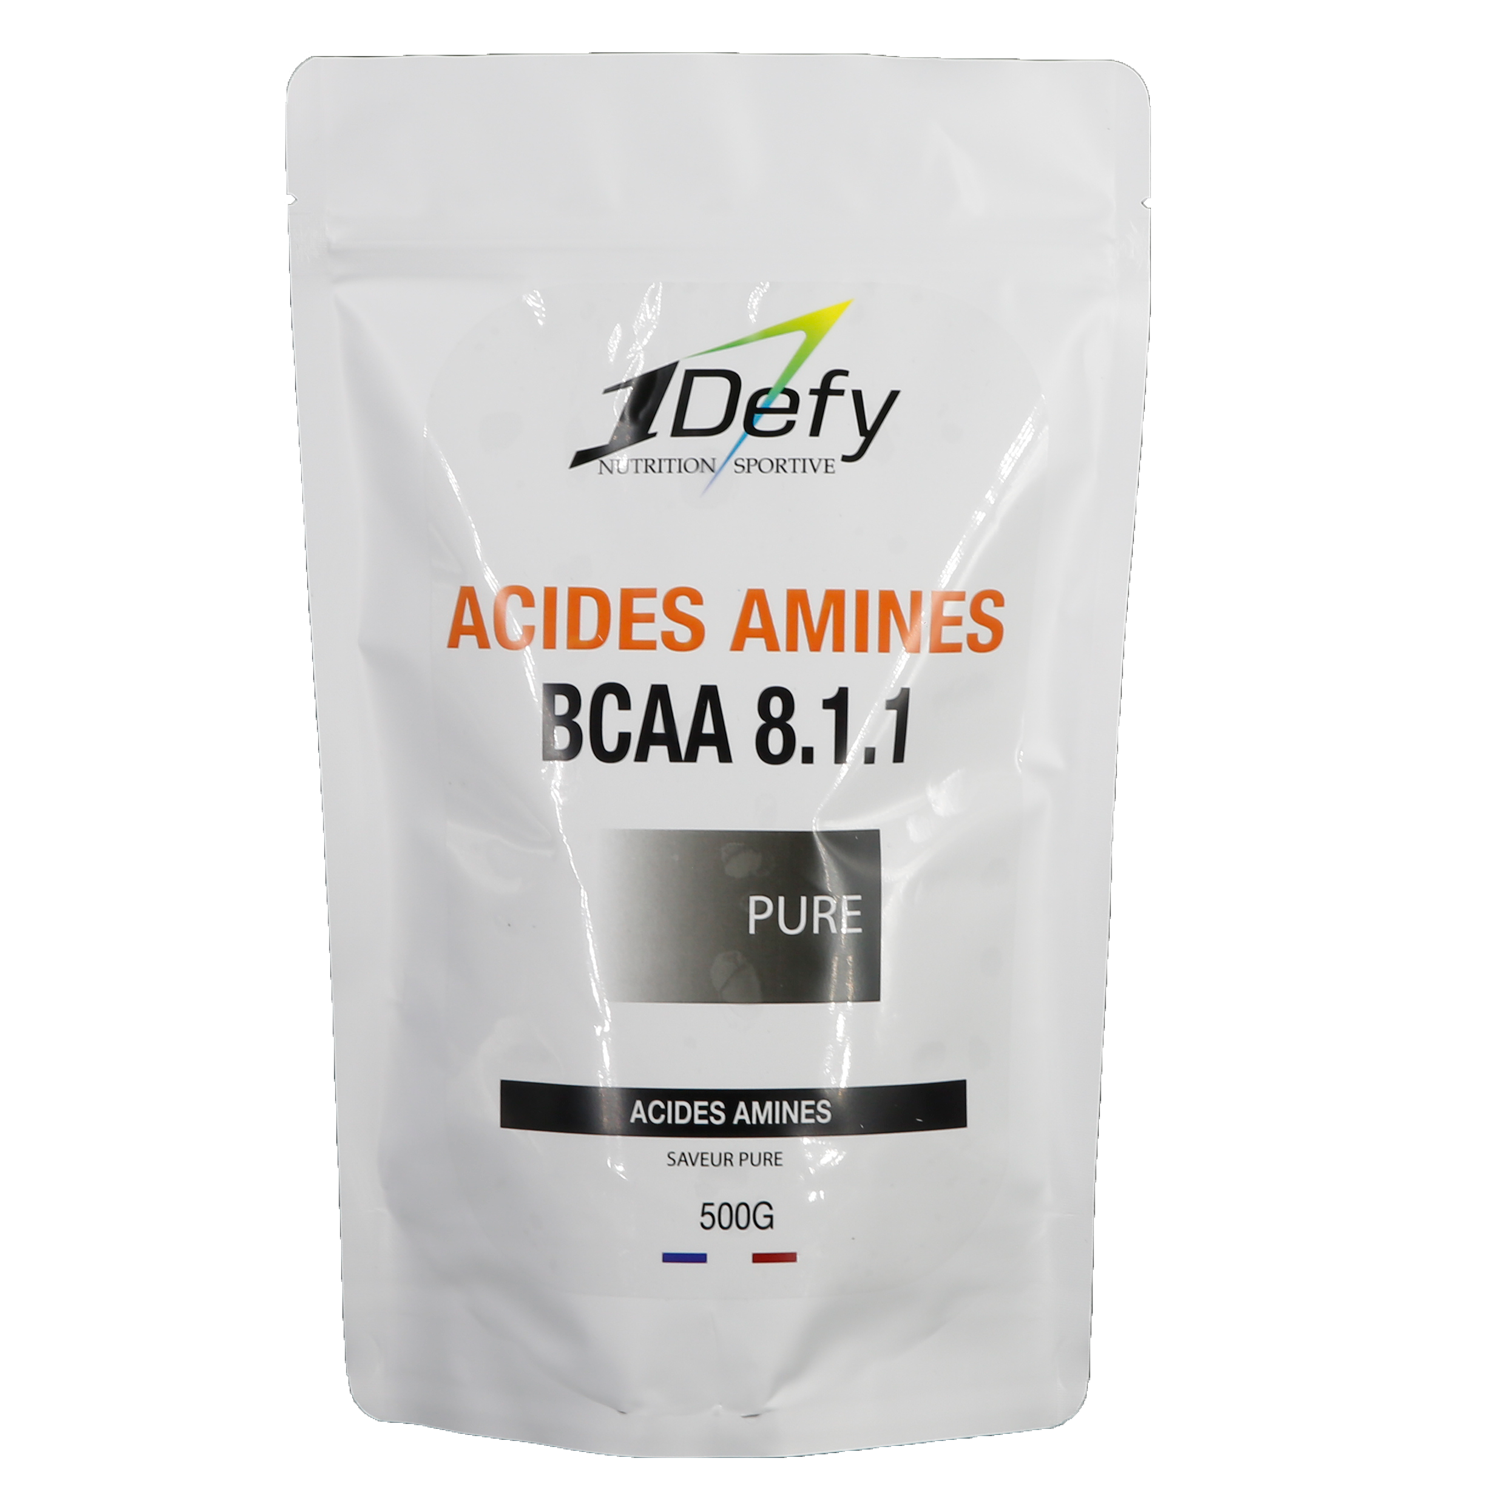 acides aminées BCAA 2.1.1